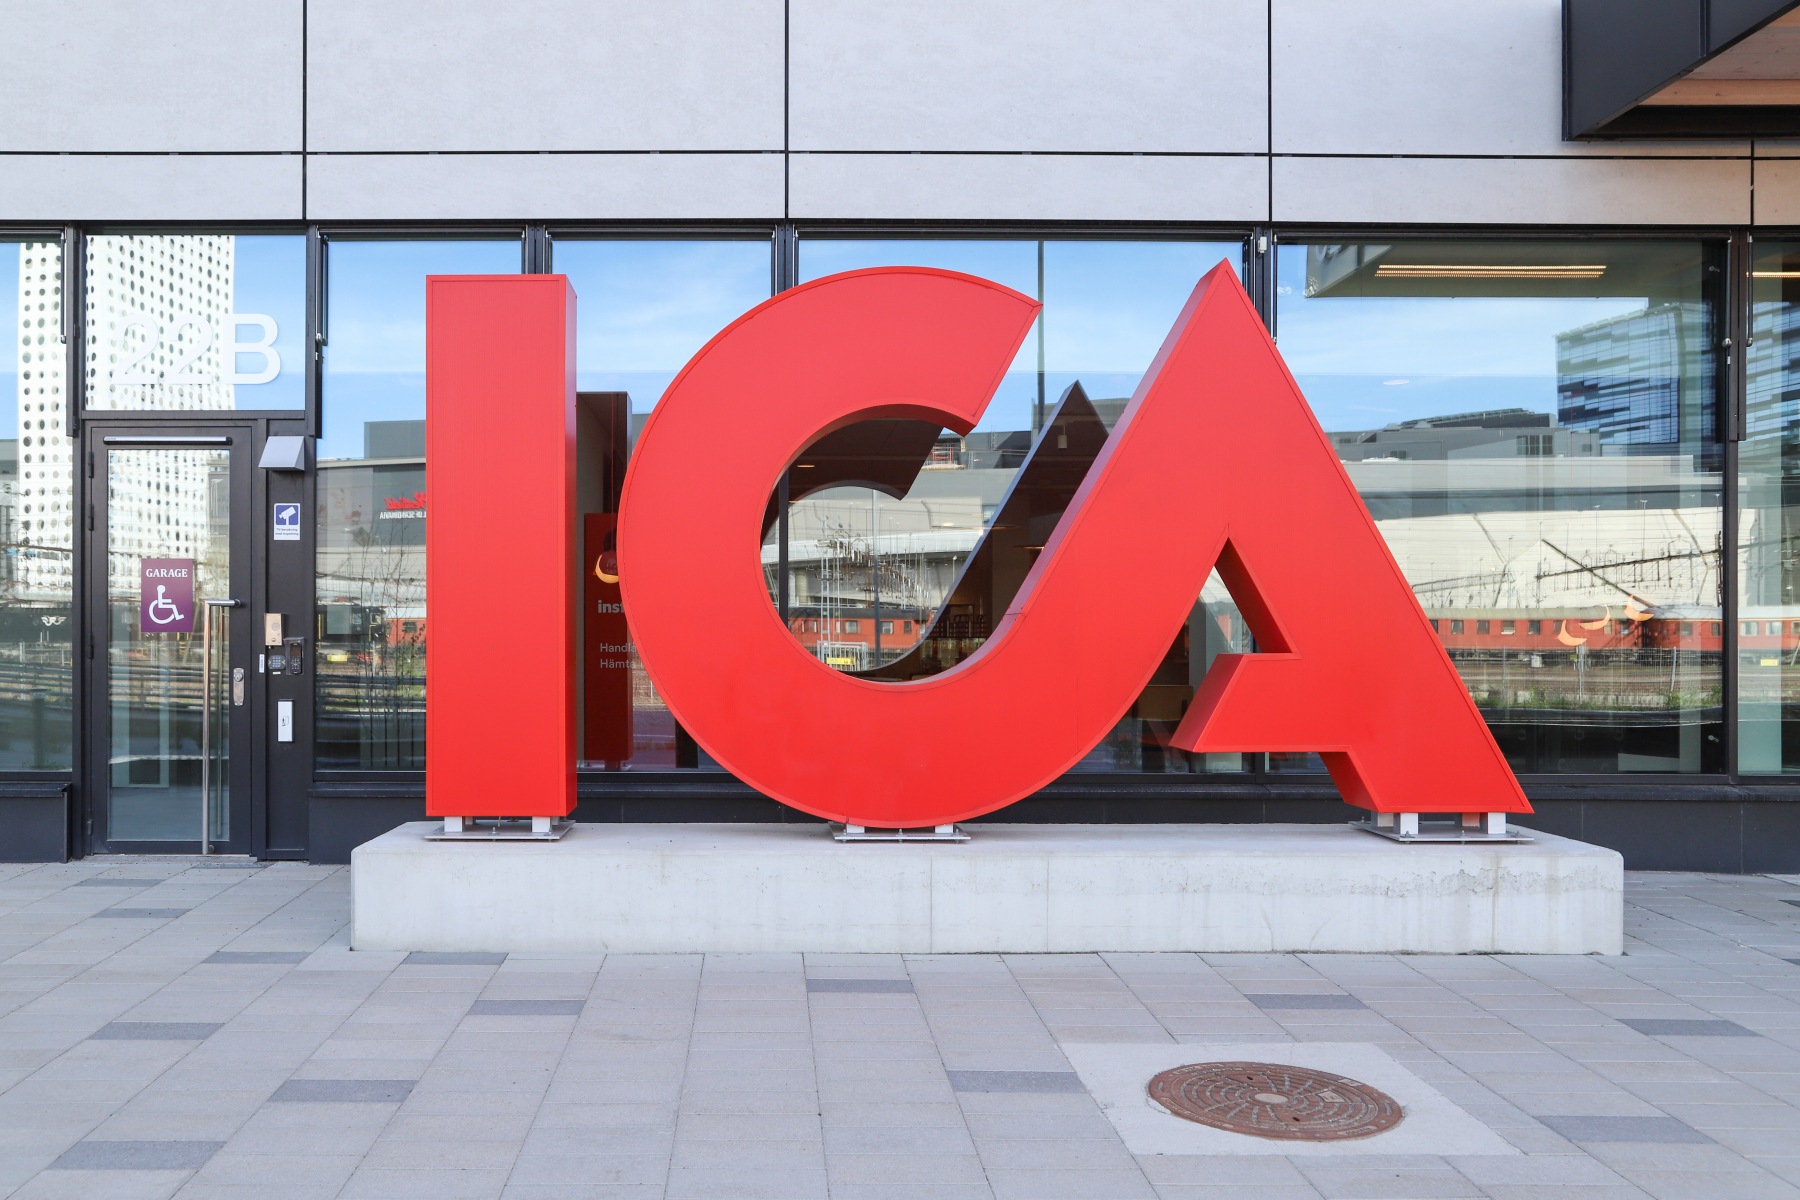 Ica-handlarna och AMF vill köpa Ica-gruppen